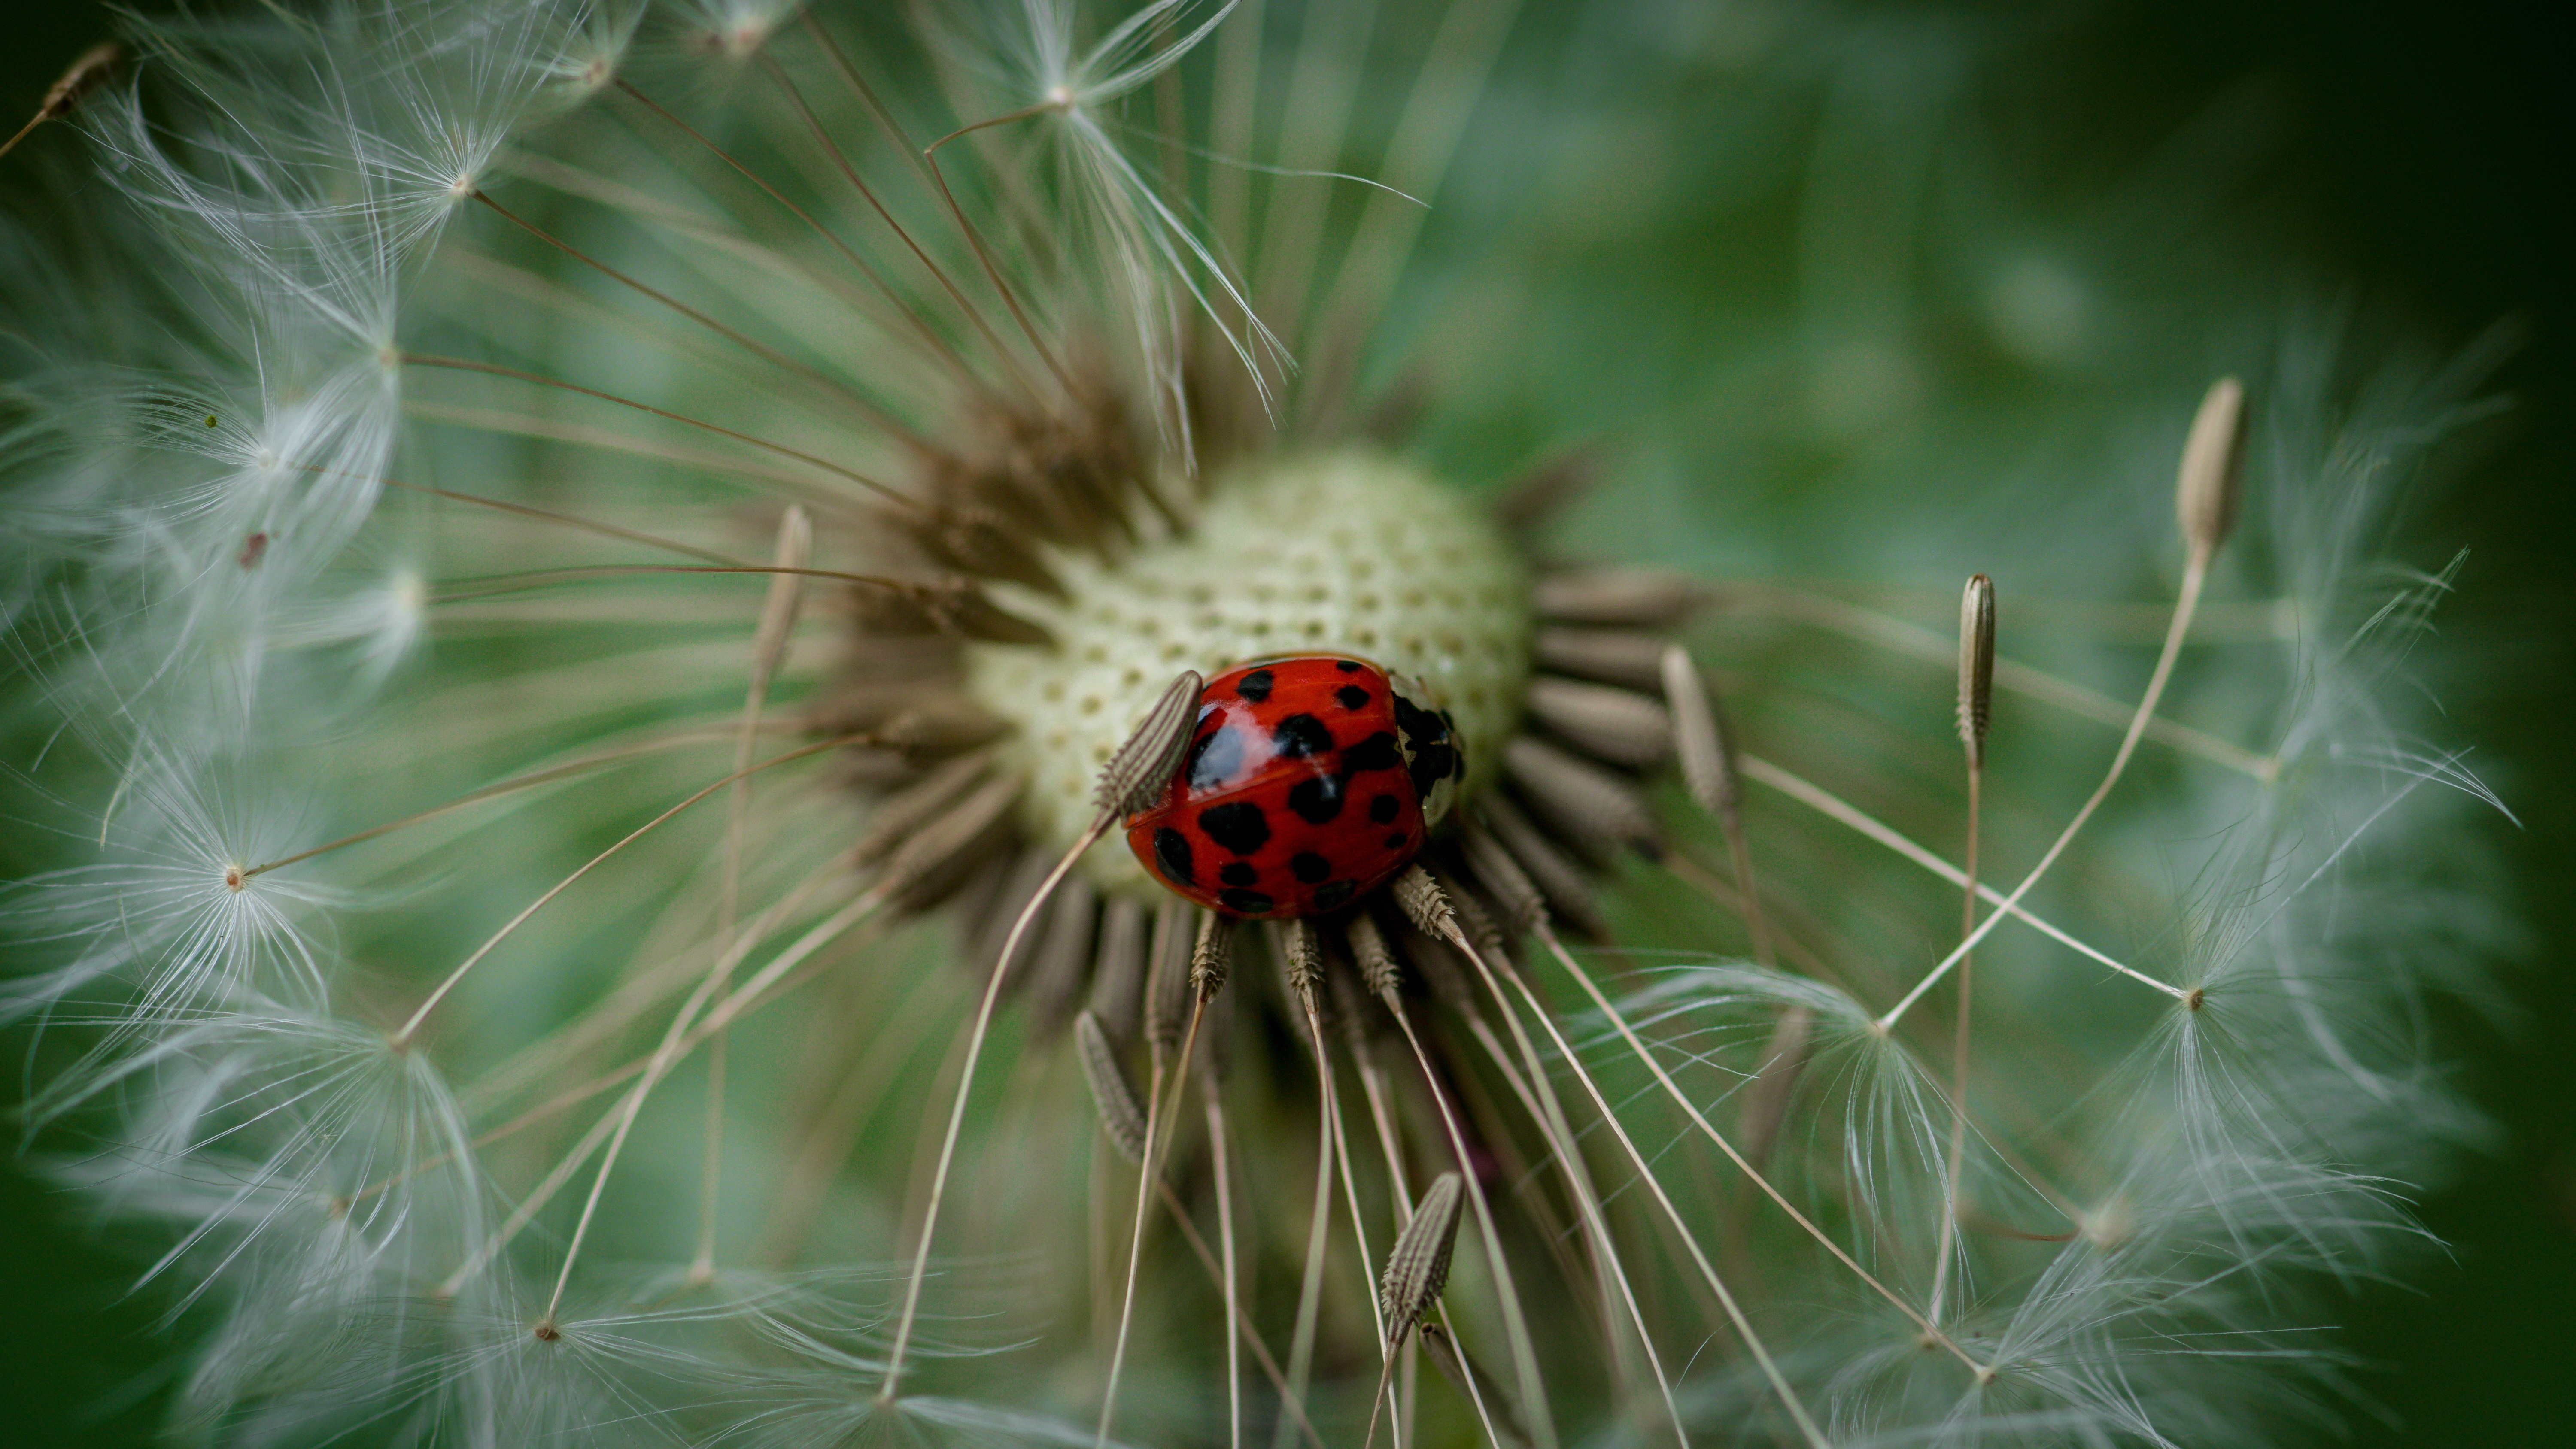 Popular Ladybug Image for Phone